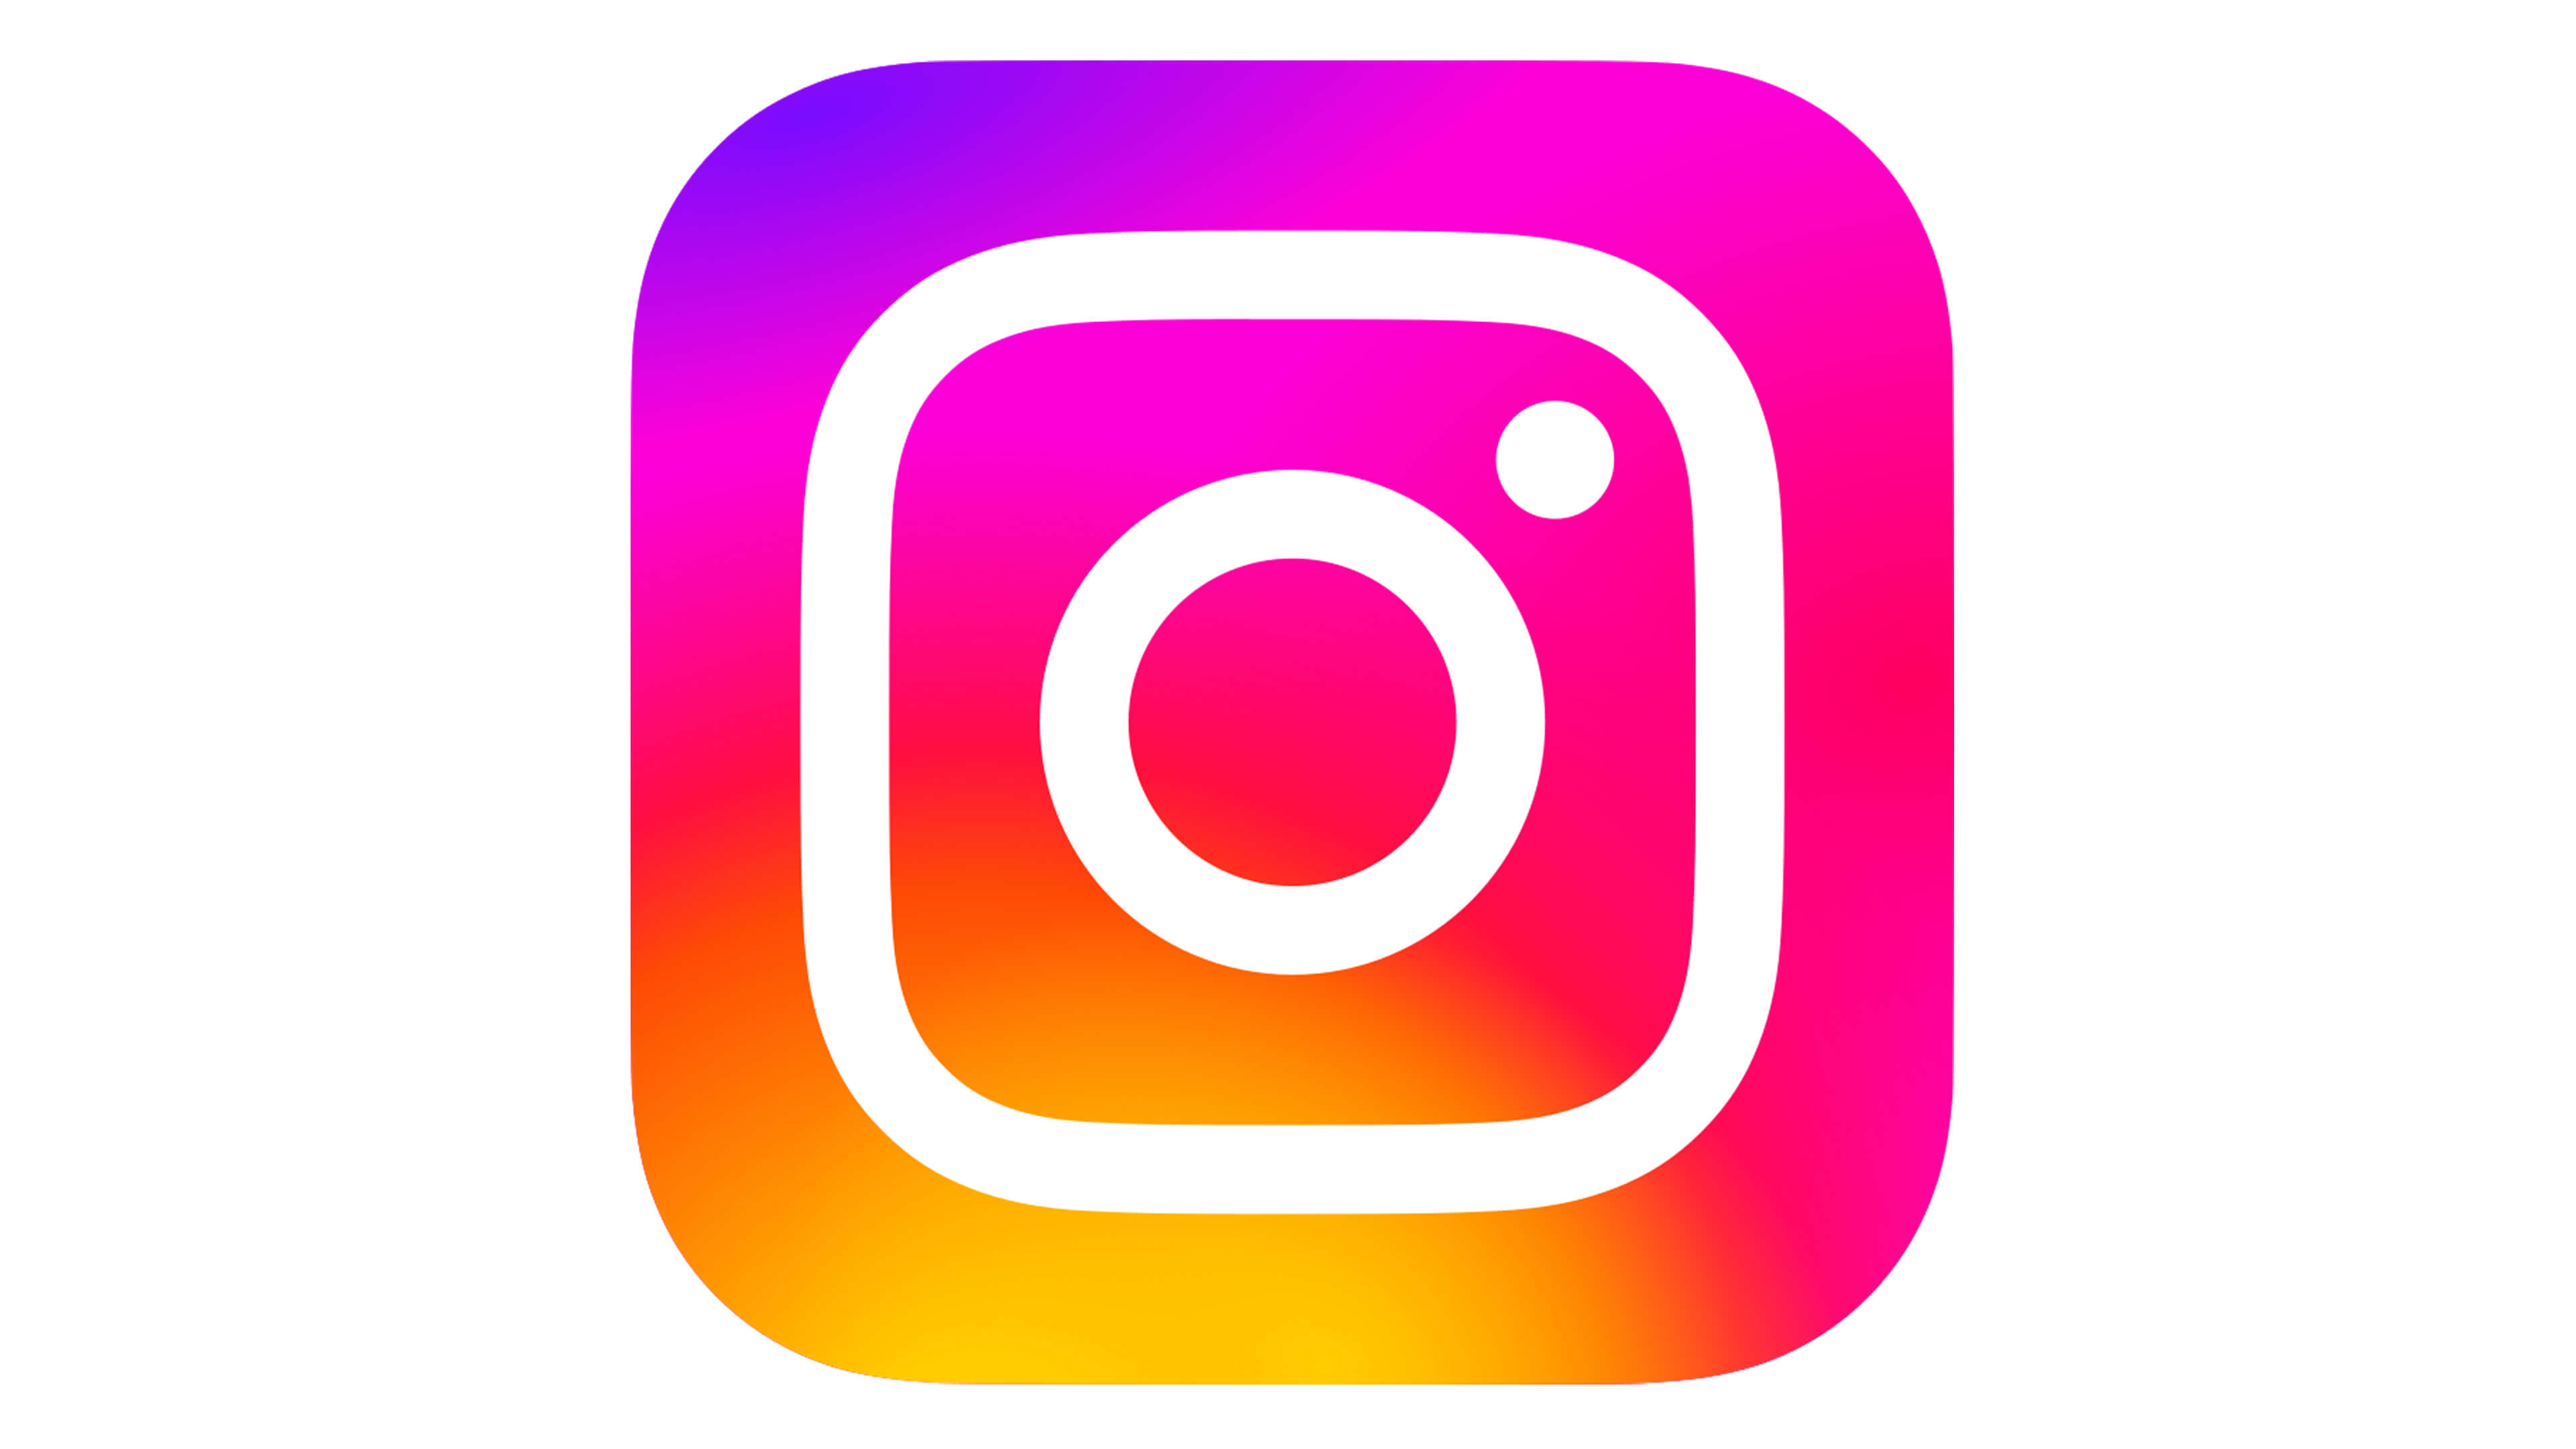 logo d'instagram